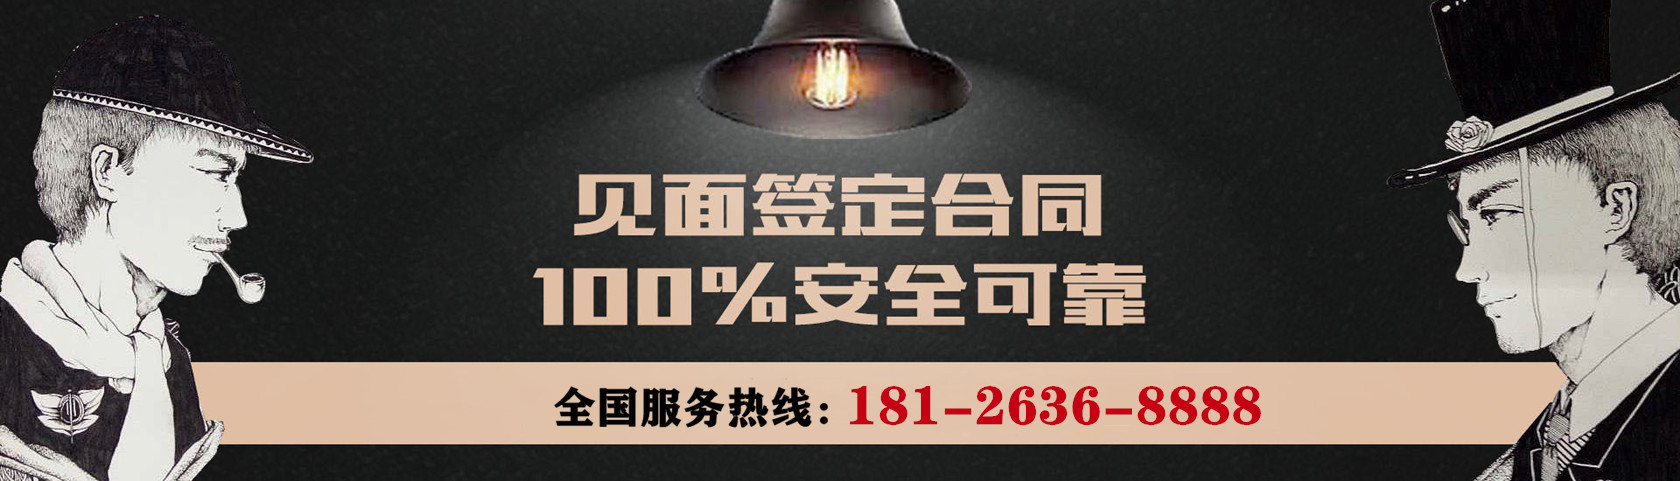 深圳仁杰侦探公司承诺：客户信息绝对安全，100%不外泄